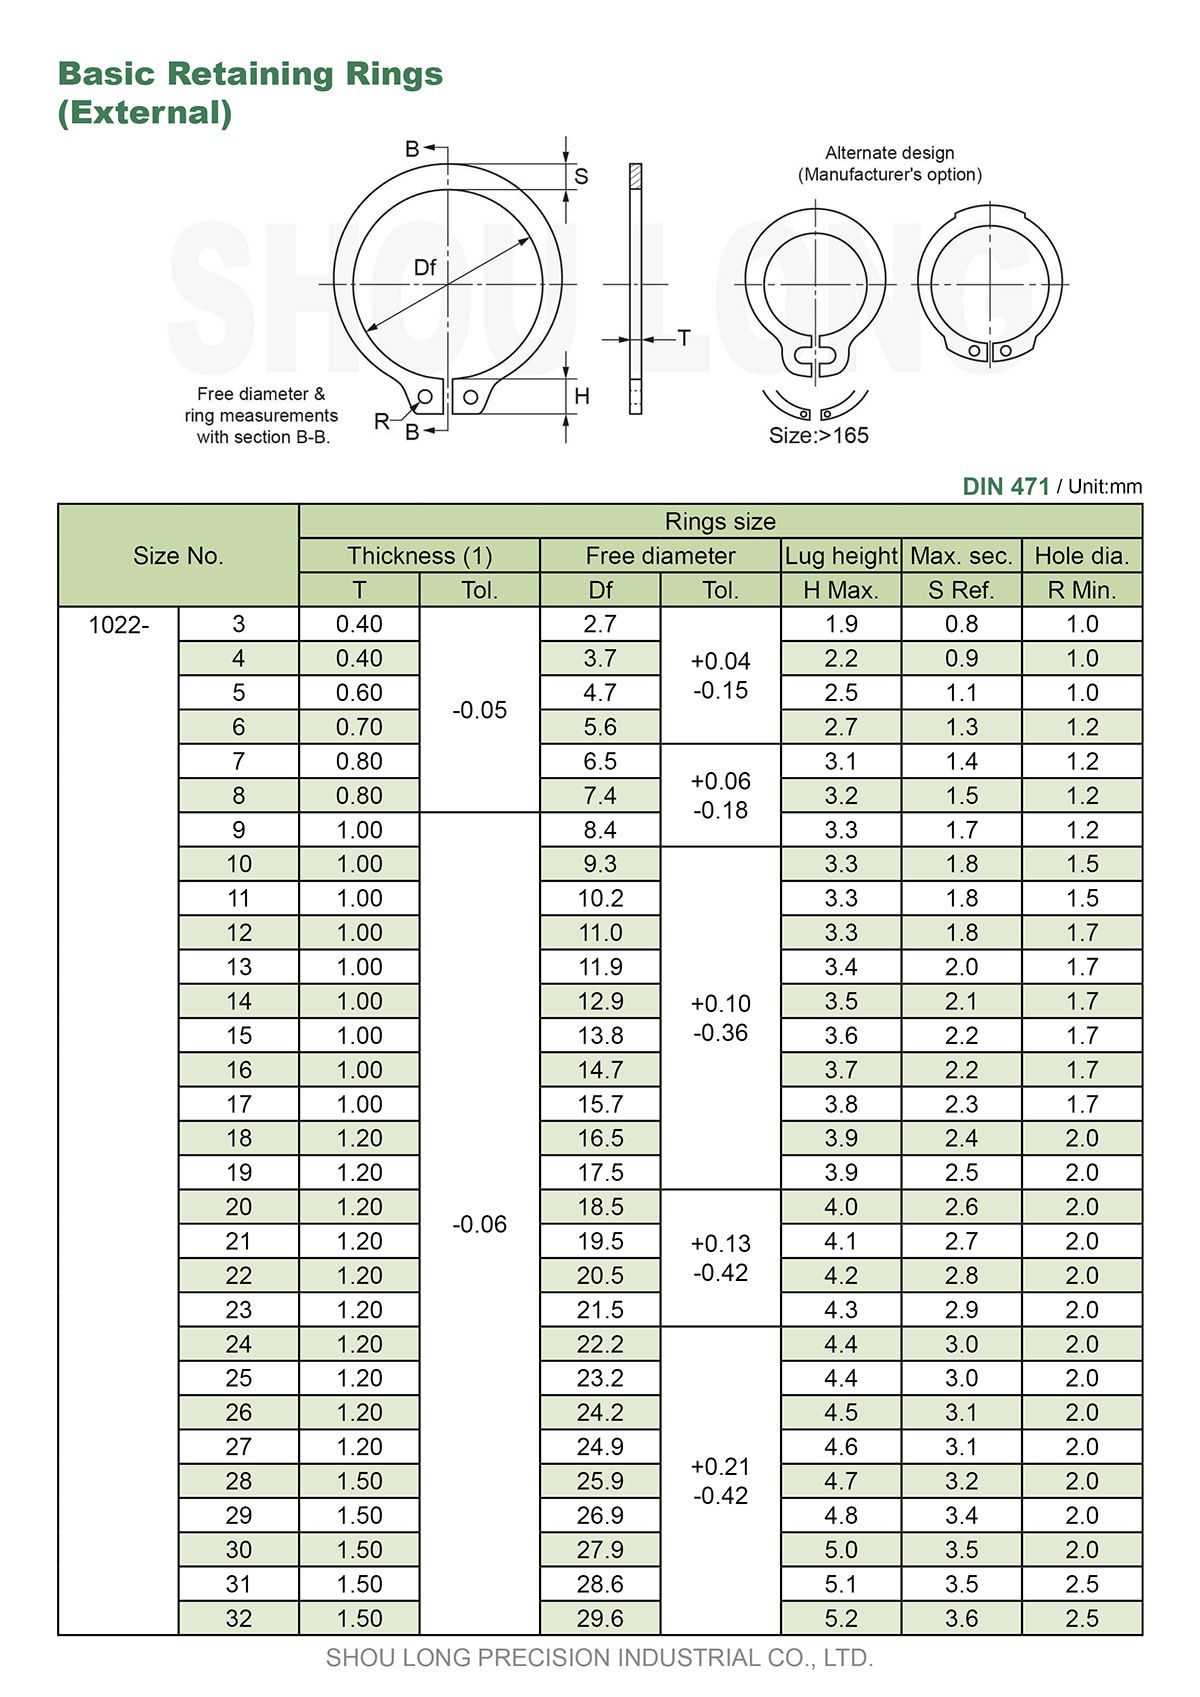 مواصفات حلقات الاحتفاظ الأساسية بالمقاسات المترية للعمود DIN471-1